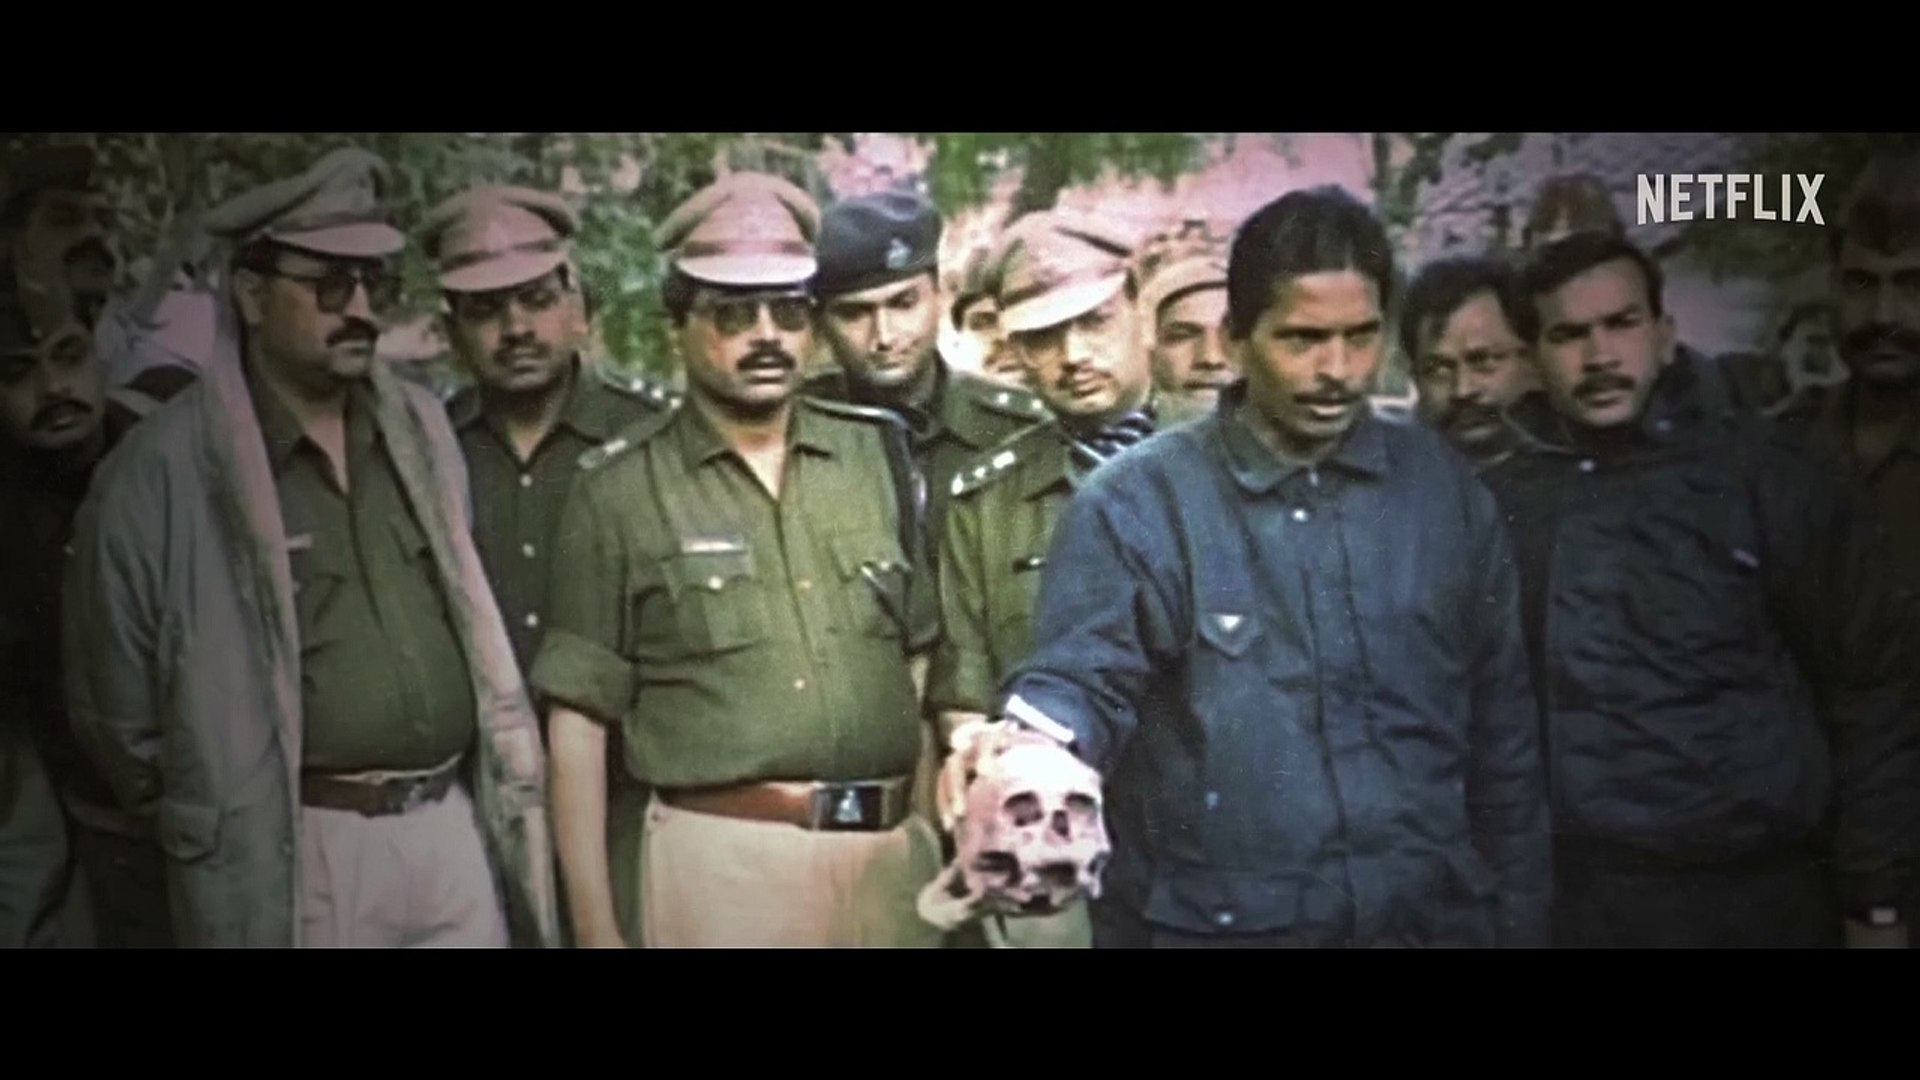 The Diary of a Serial Killer, Indian Predator: Season 2, Official Trailer